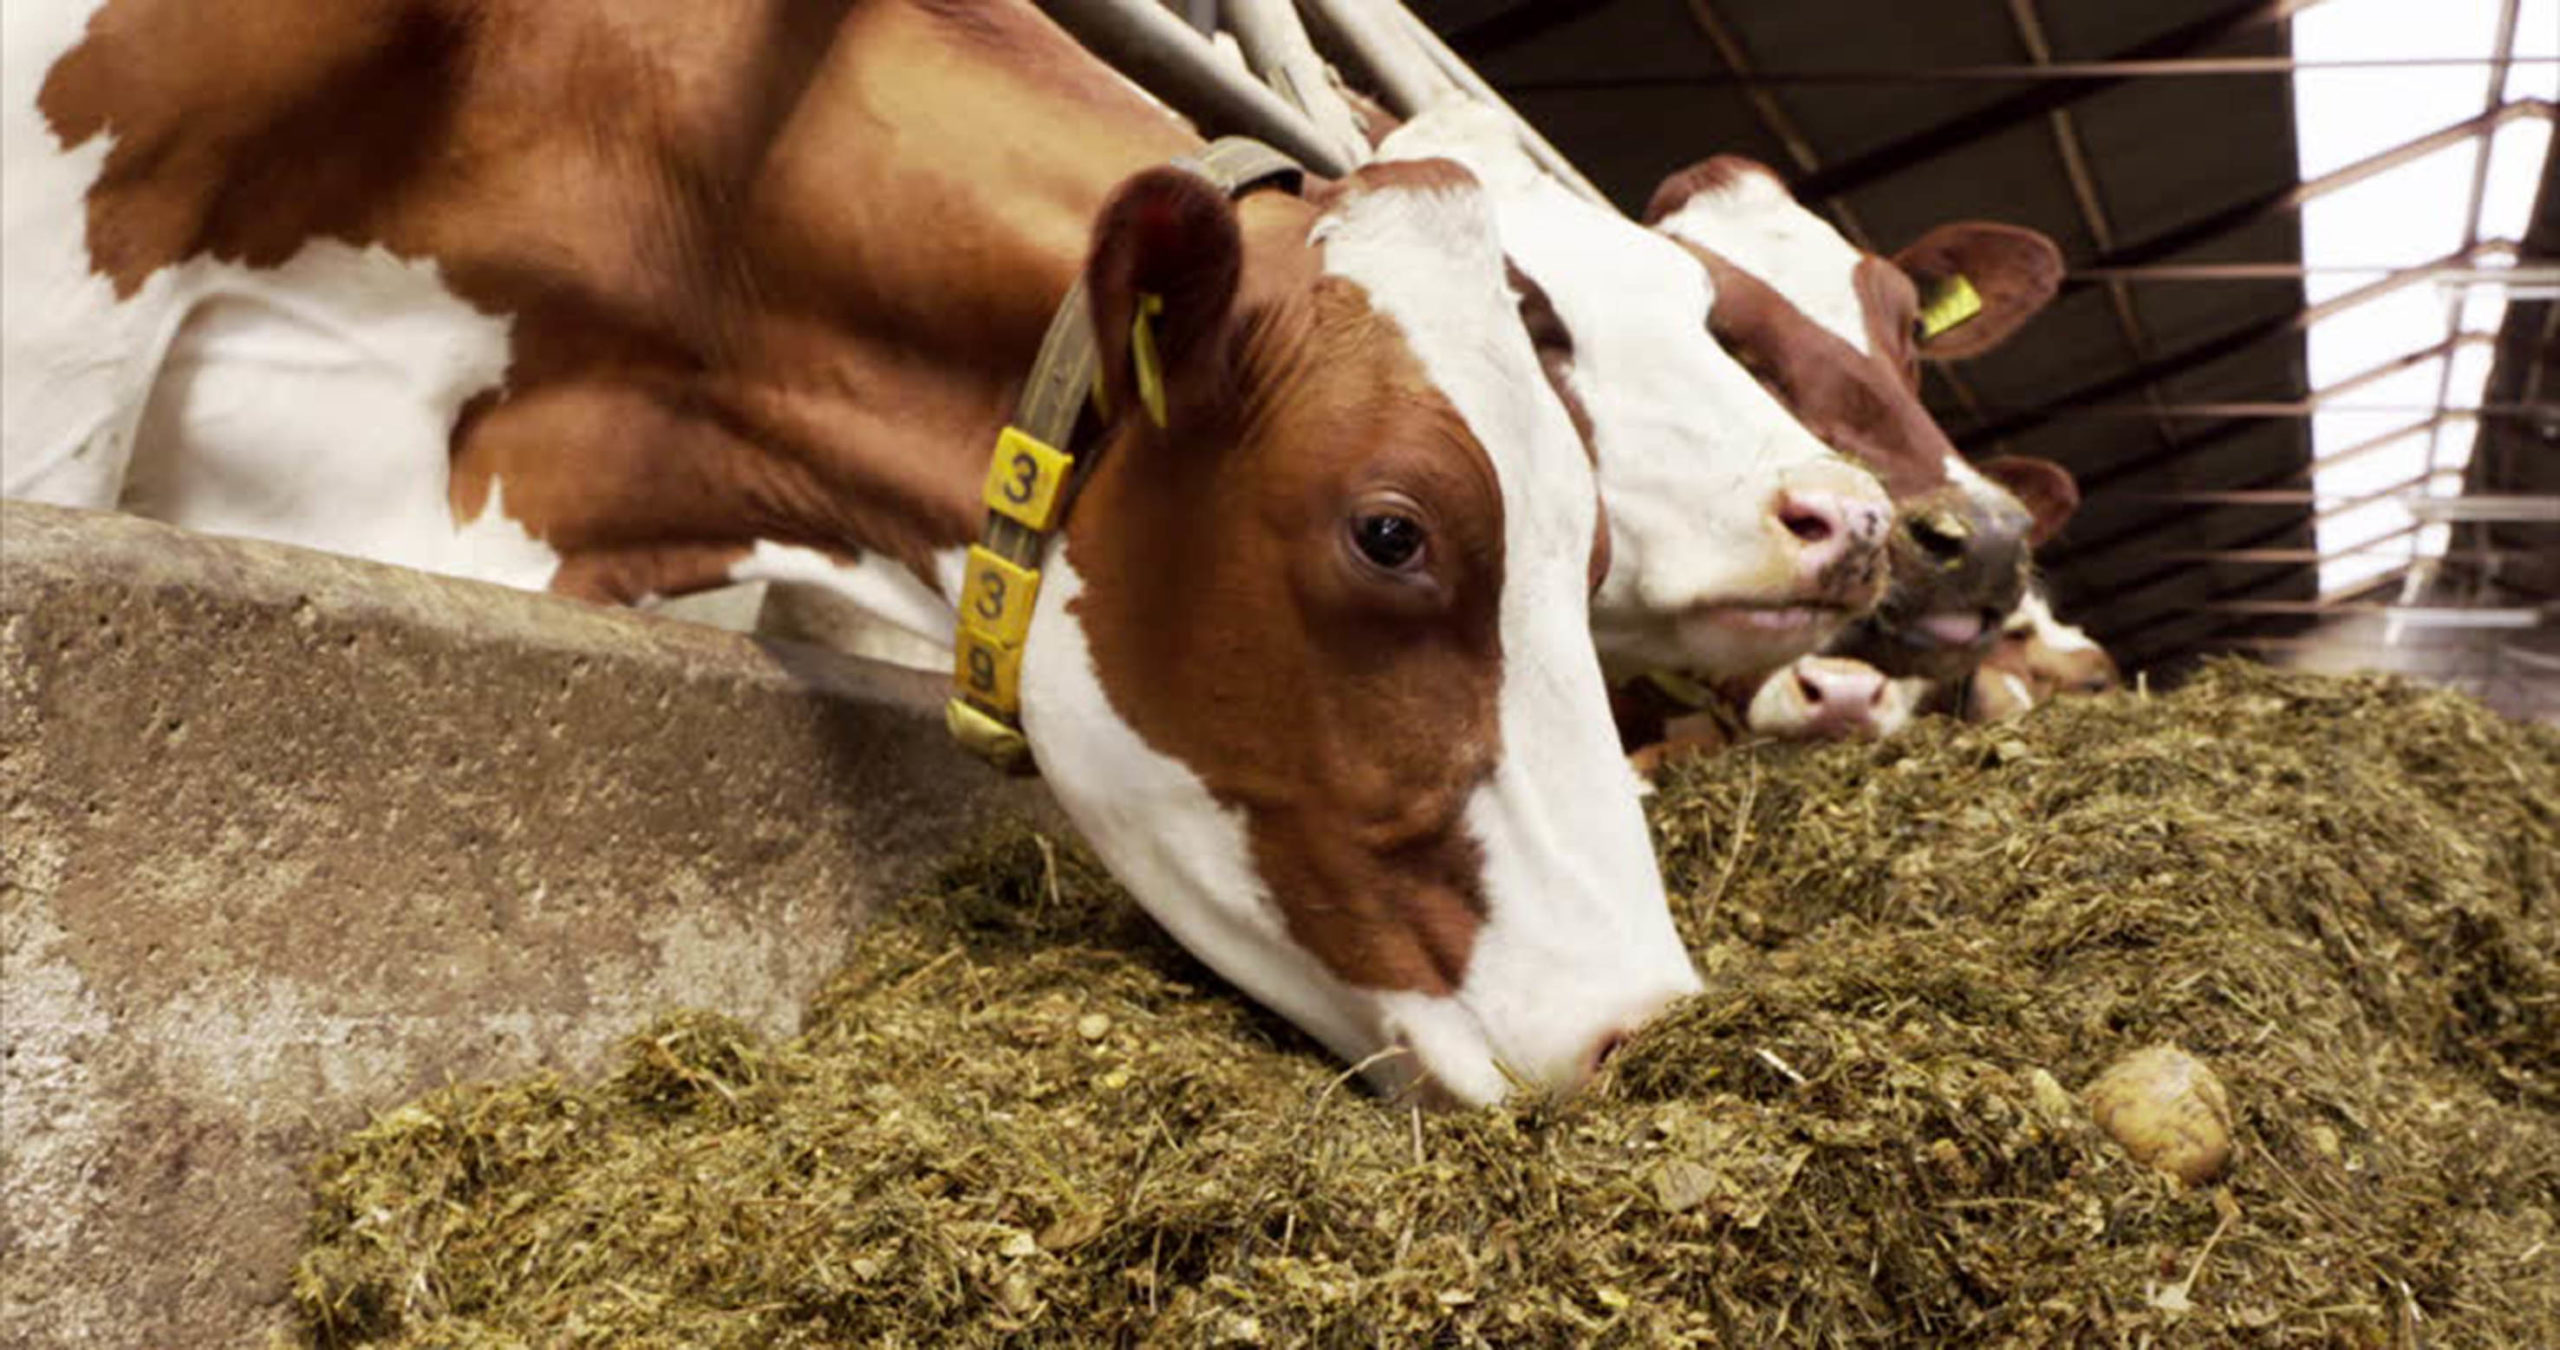 Alimentar al ganado con suplementos de aceite de oliva mejora el sabor y calidad de lácteos: Investigadores.